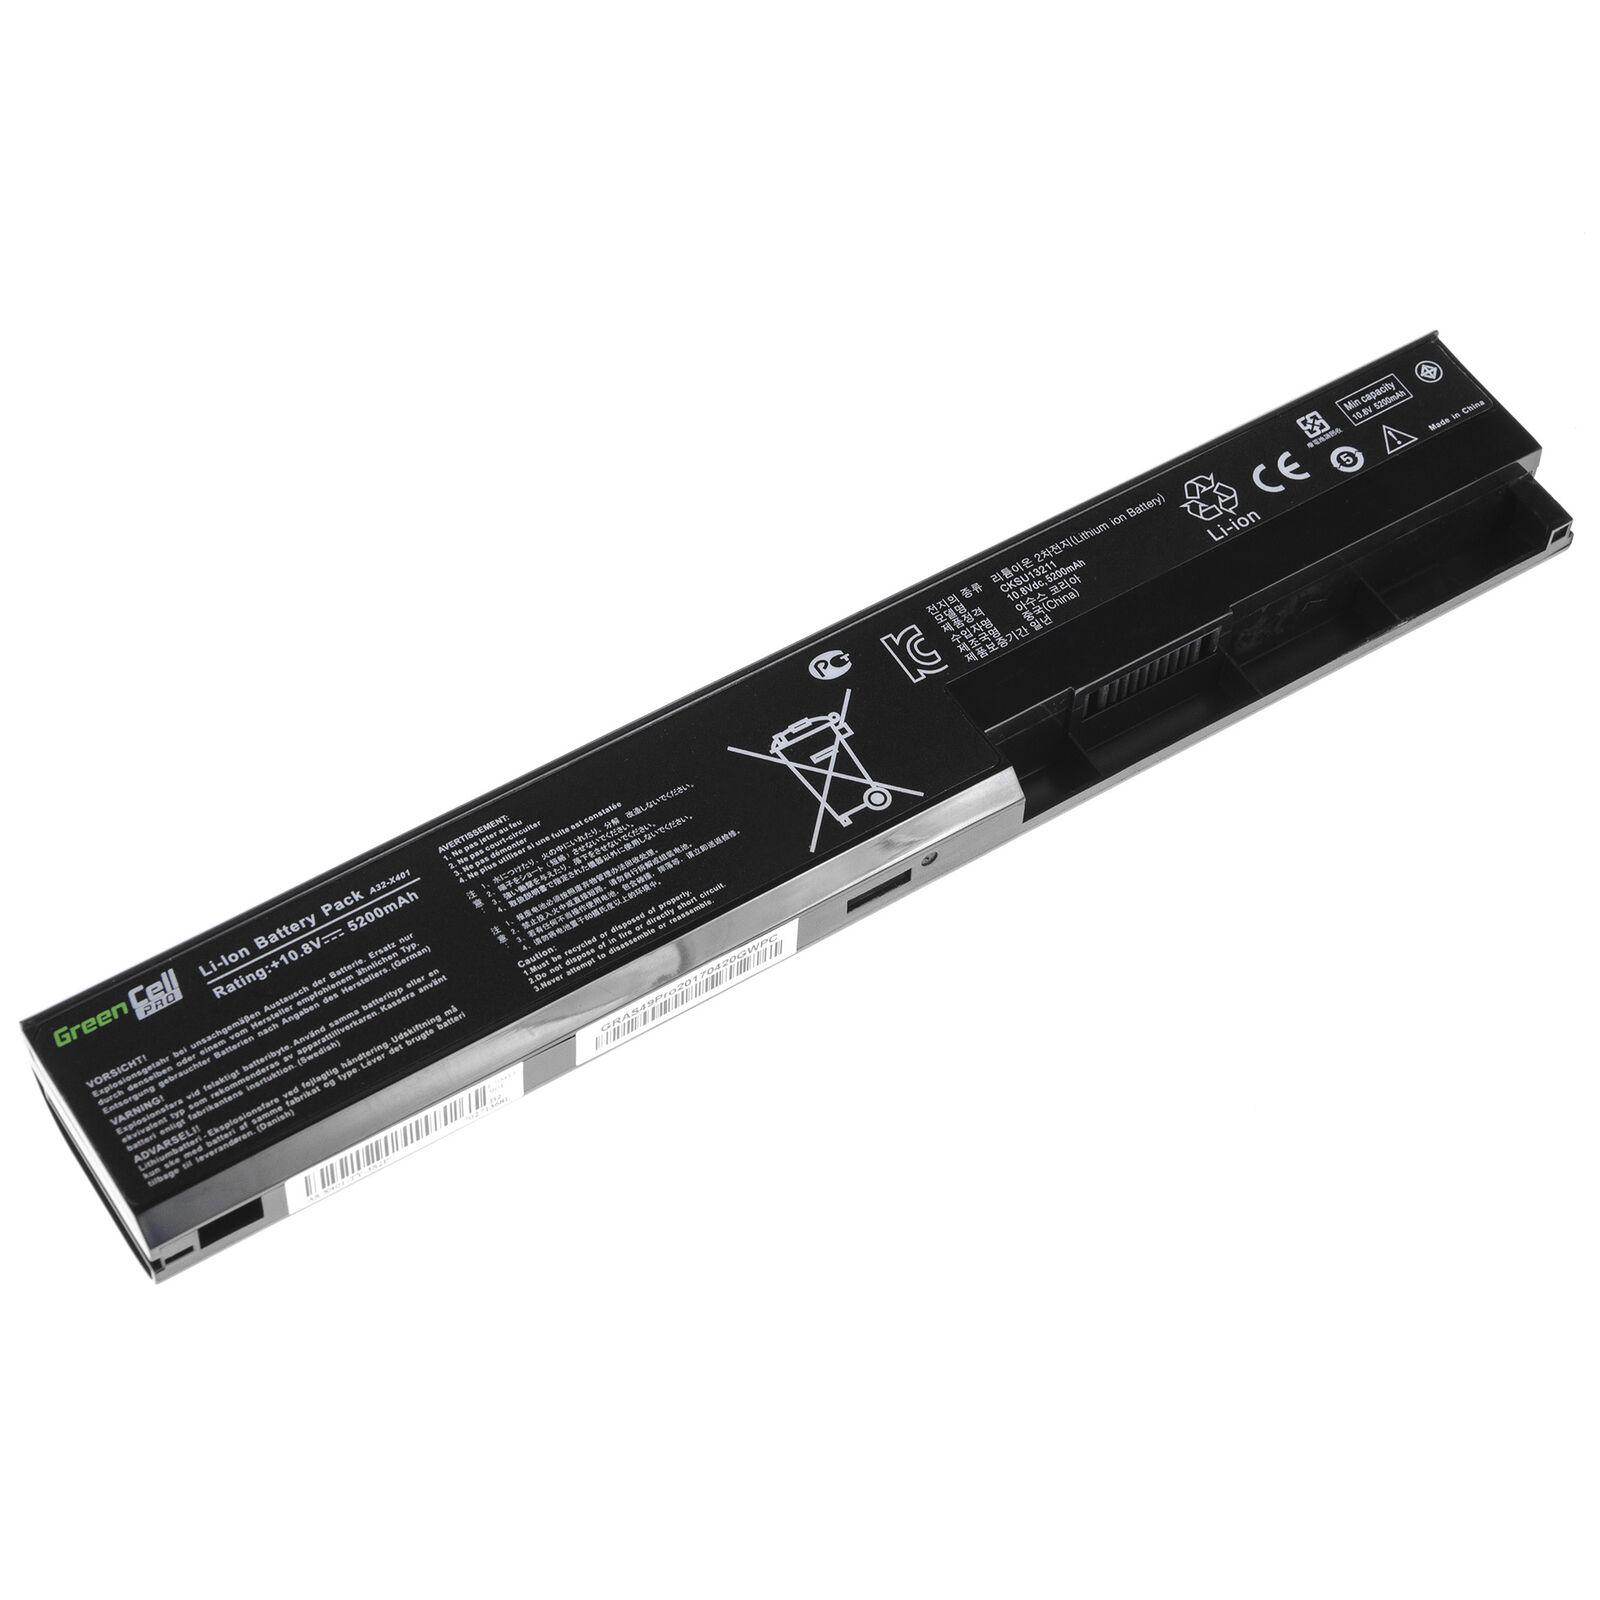 Asus X301 X301A X301U X501 X501A X501U A31-X401 A41-X401 batteri (kompatibel)